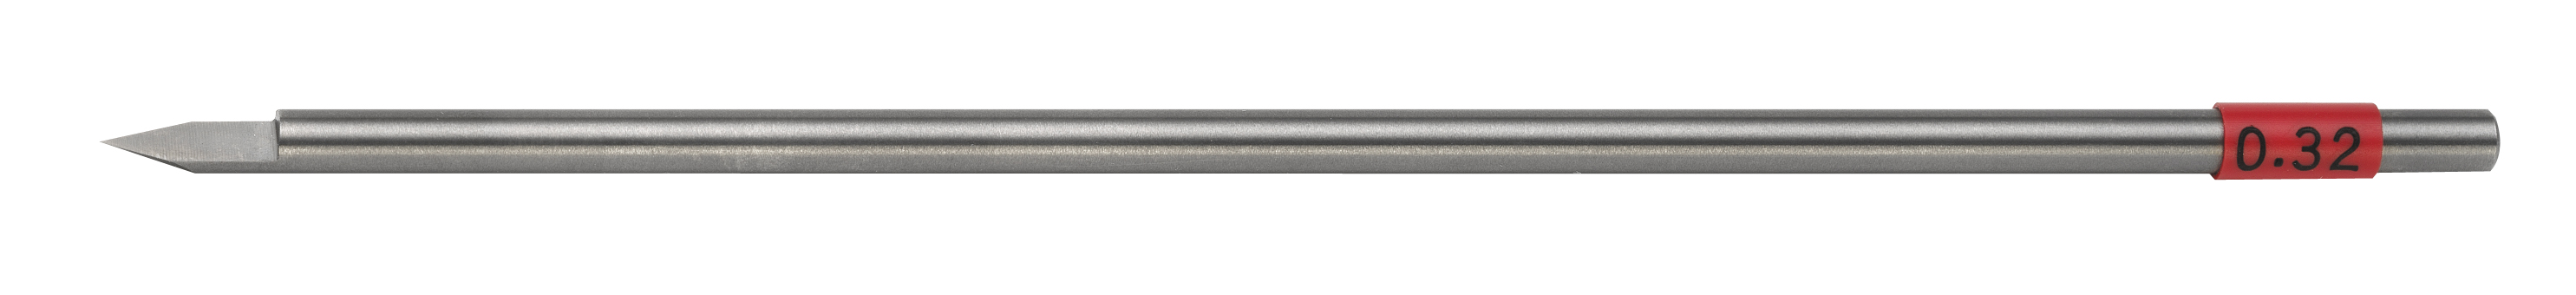 TS cutter, shaft dia. 4.36 mm, width 0.32 mm Gravograph